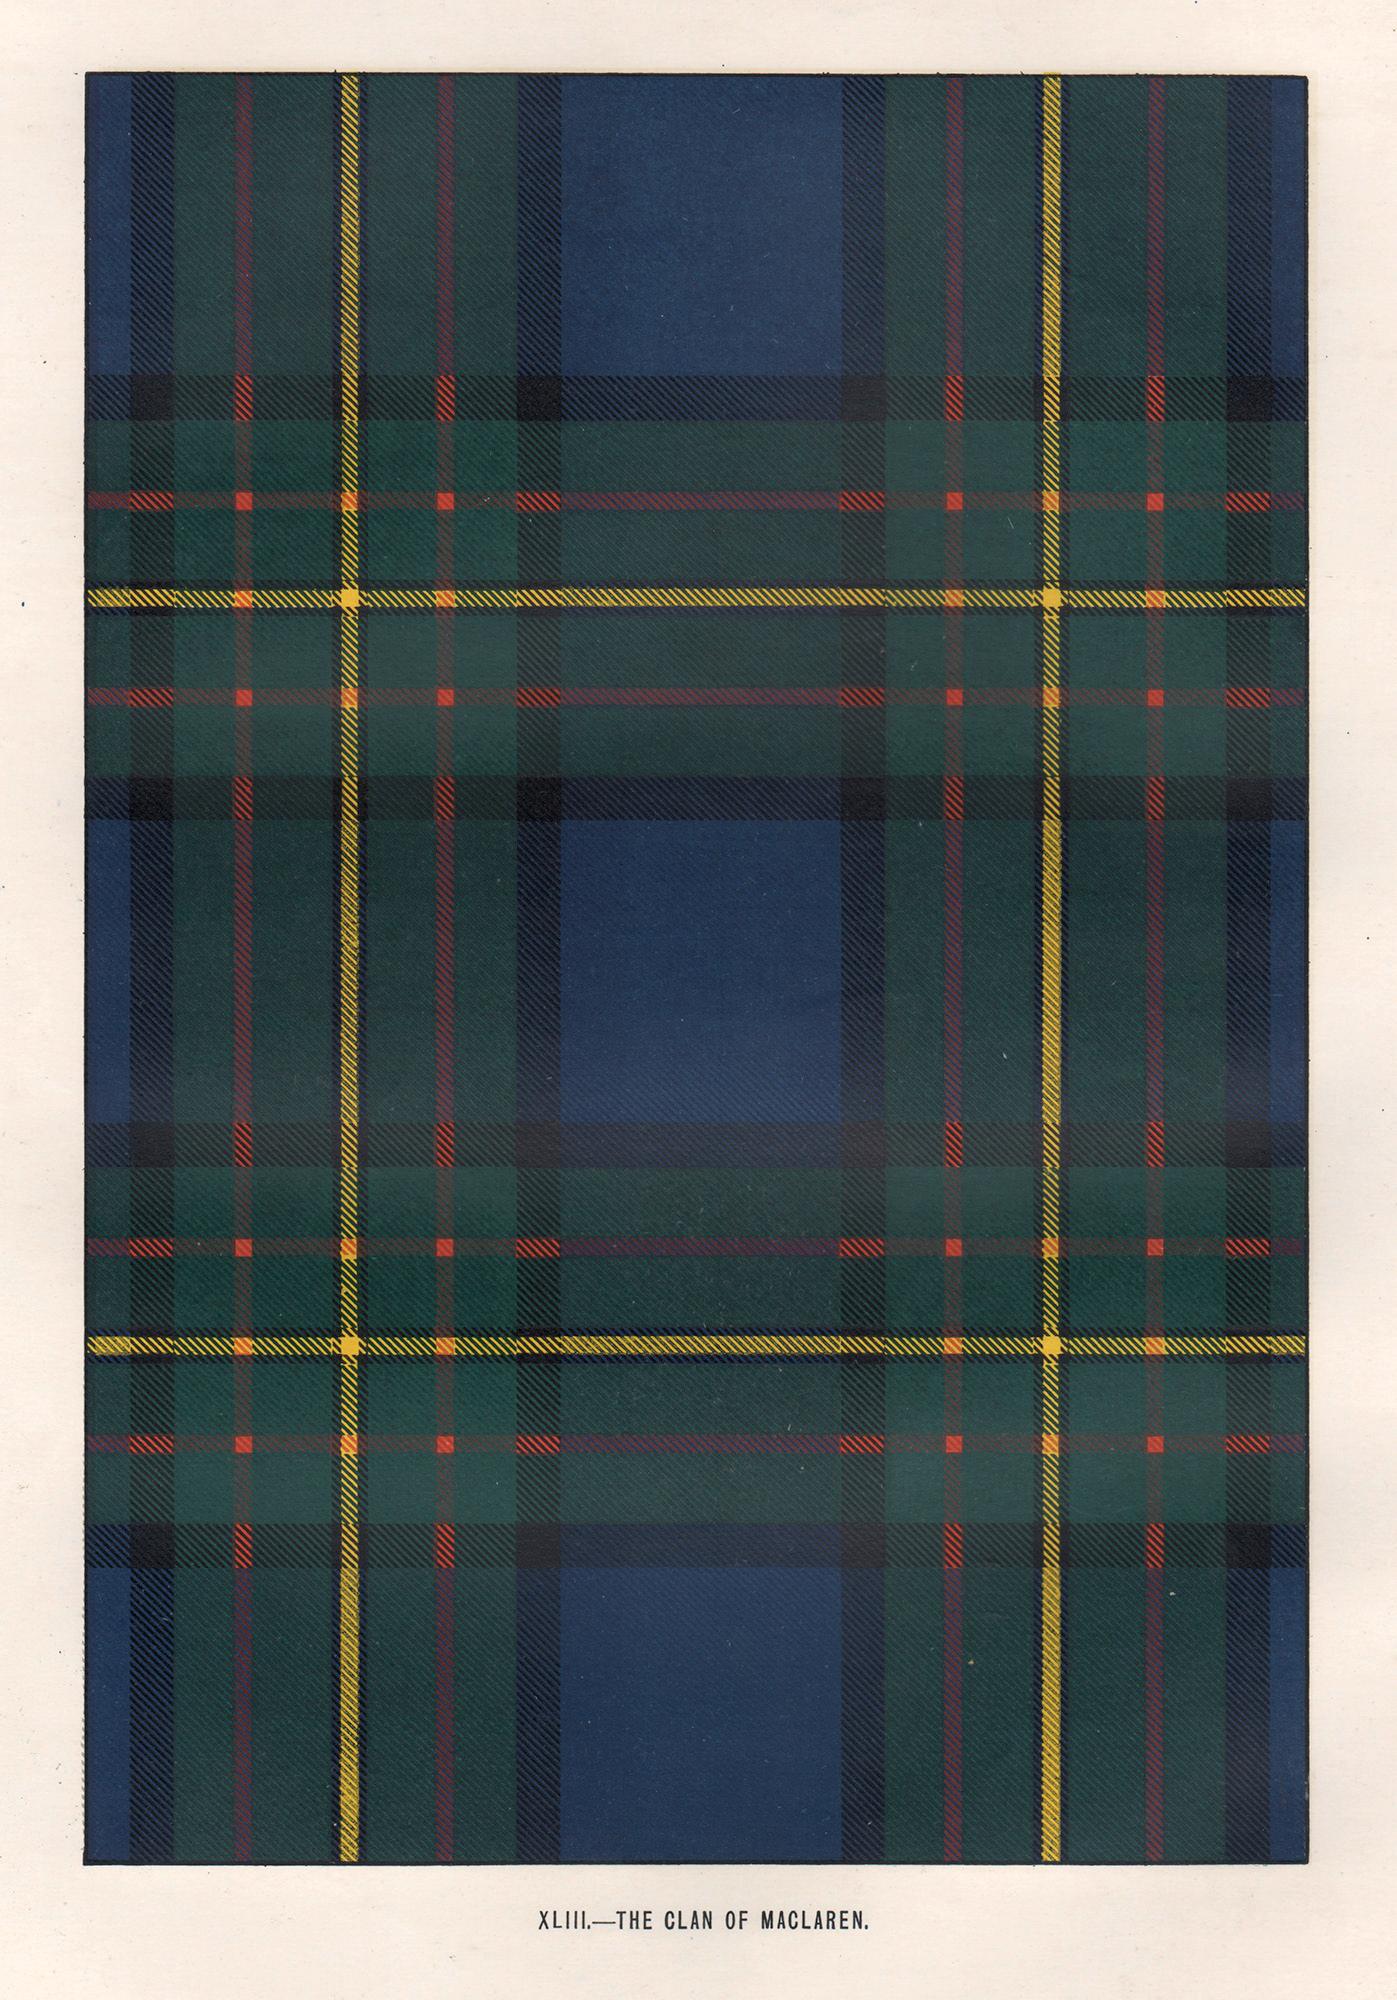 Unknown Abstract Print – Kunstdesign-Lithographiedruck The Clan of MacLaren, Tartan, schottisches Schottland